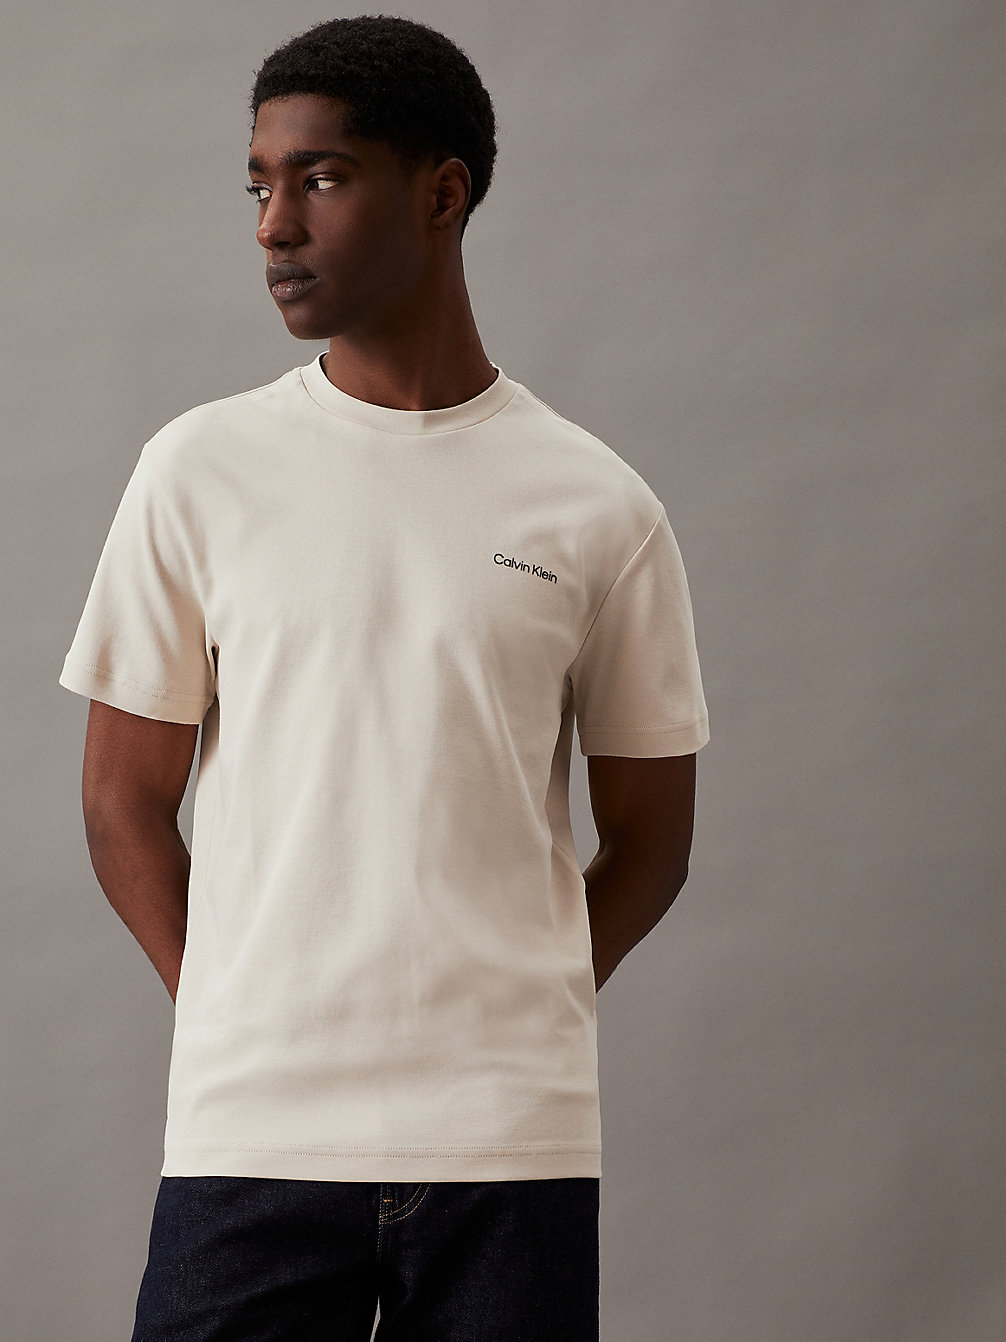 STONY BEIGE T-Shirt Aus Bio-Baumwolle undefined Herren Calvin Klein